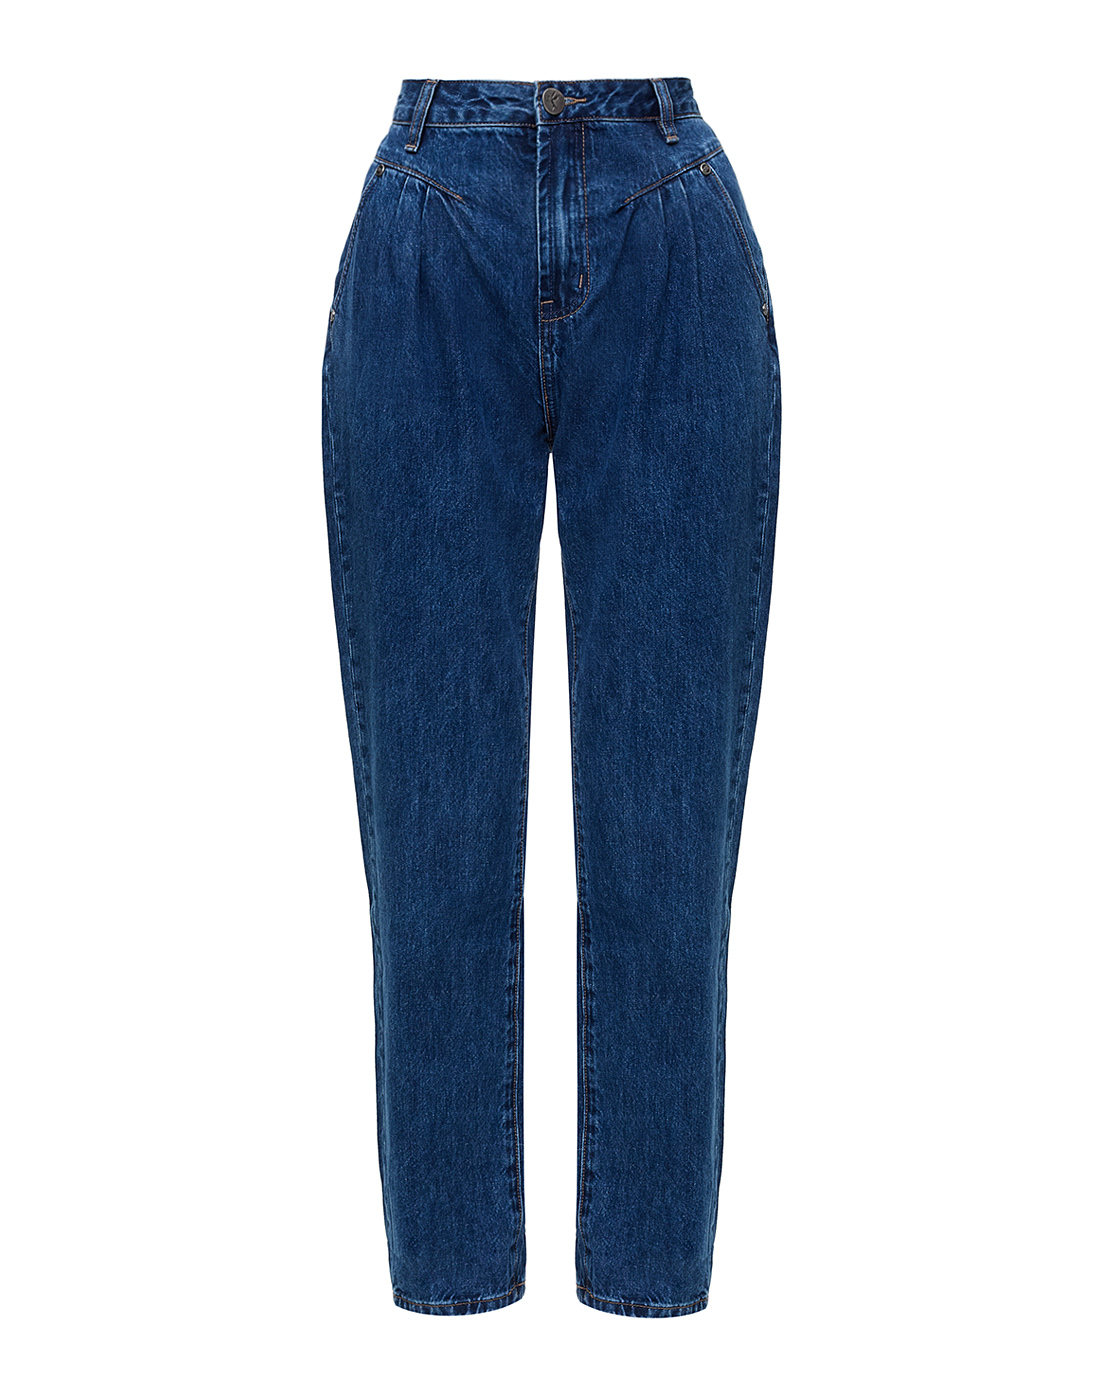 Женские темно-синие джинсы Oneteaspoon S23723-1